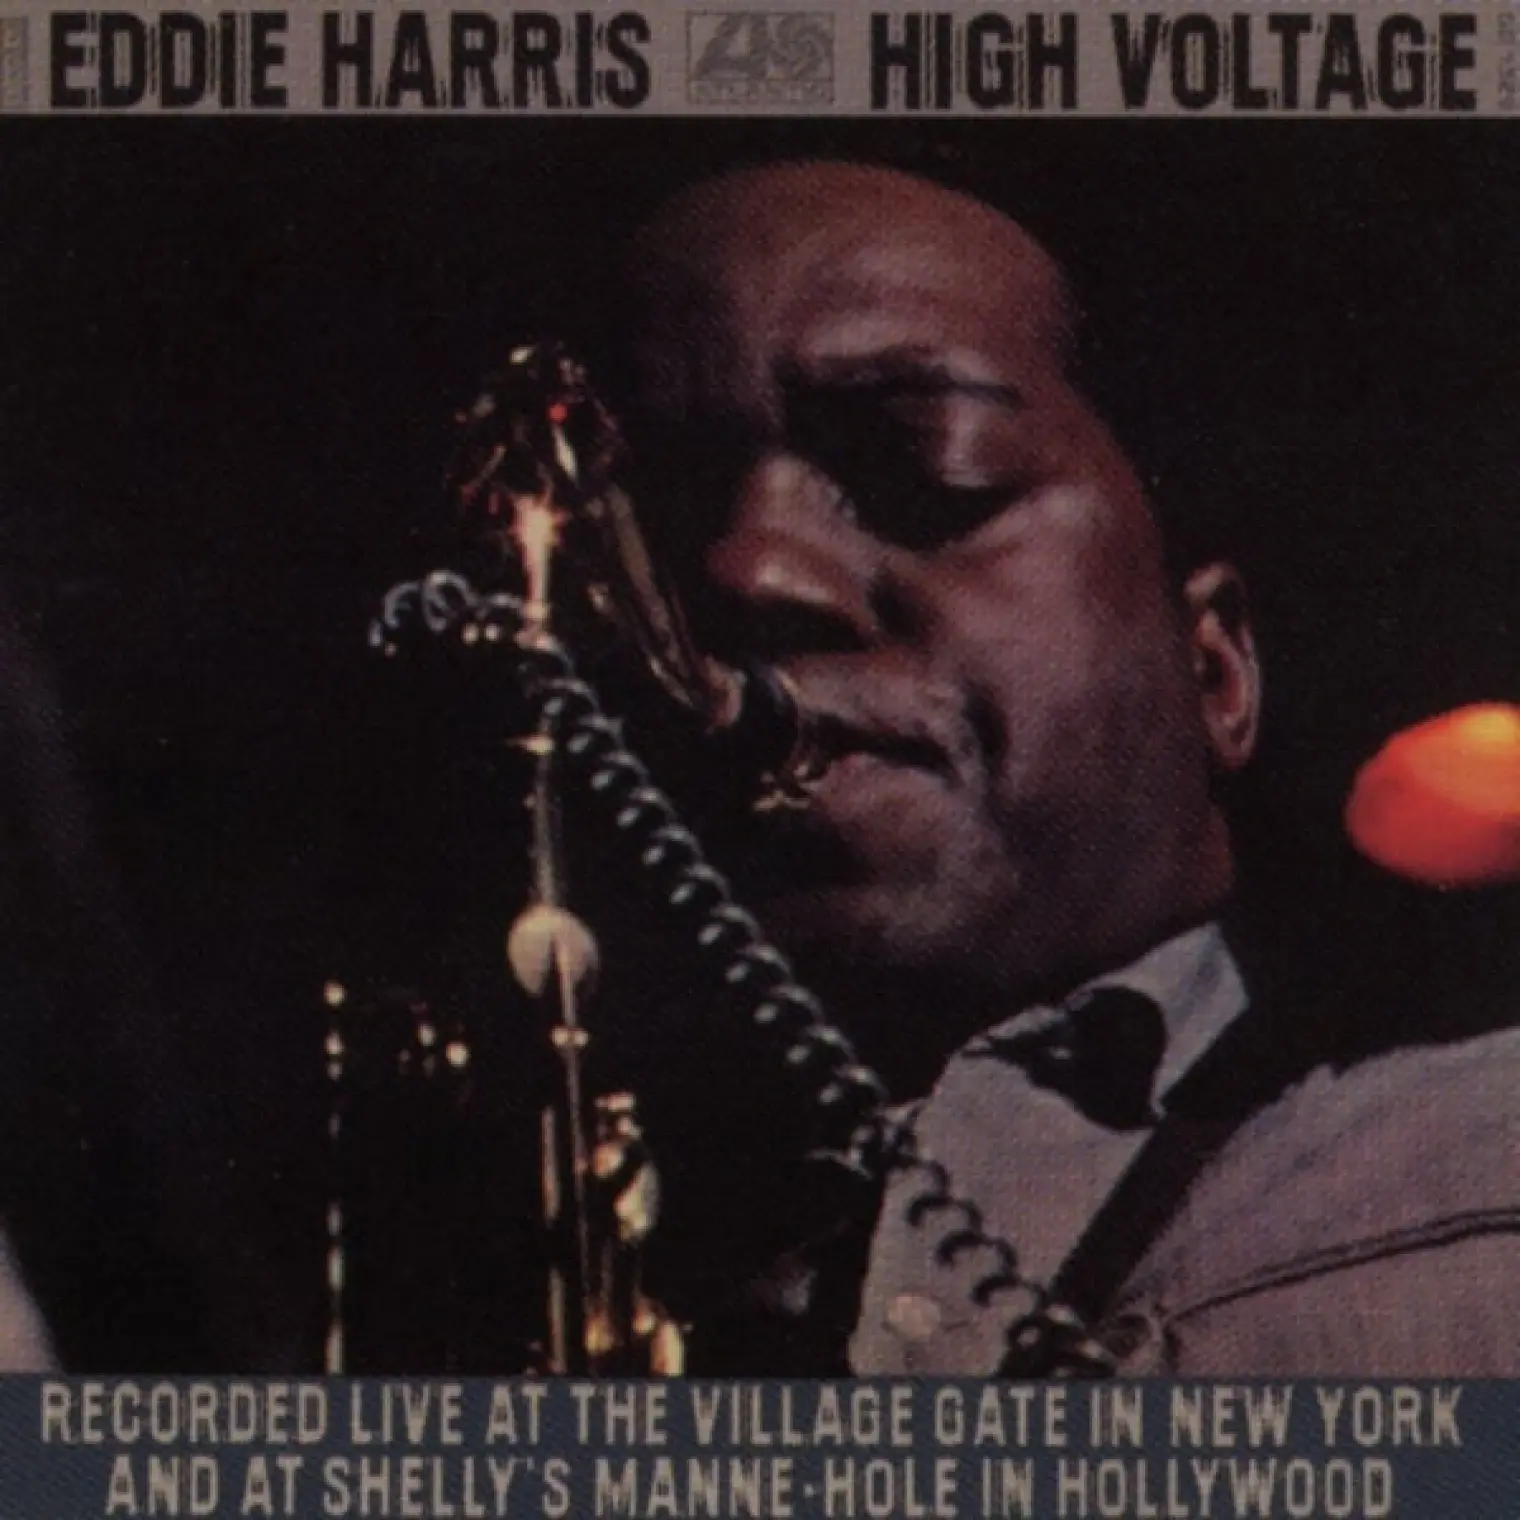 High Voltage -  EDDIE HARRIS 